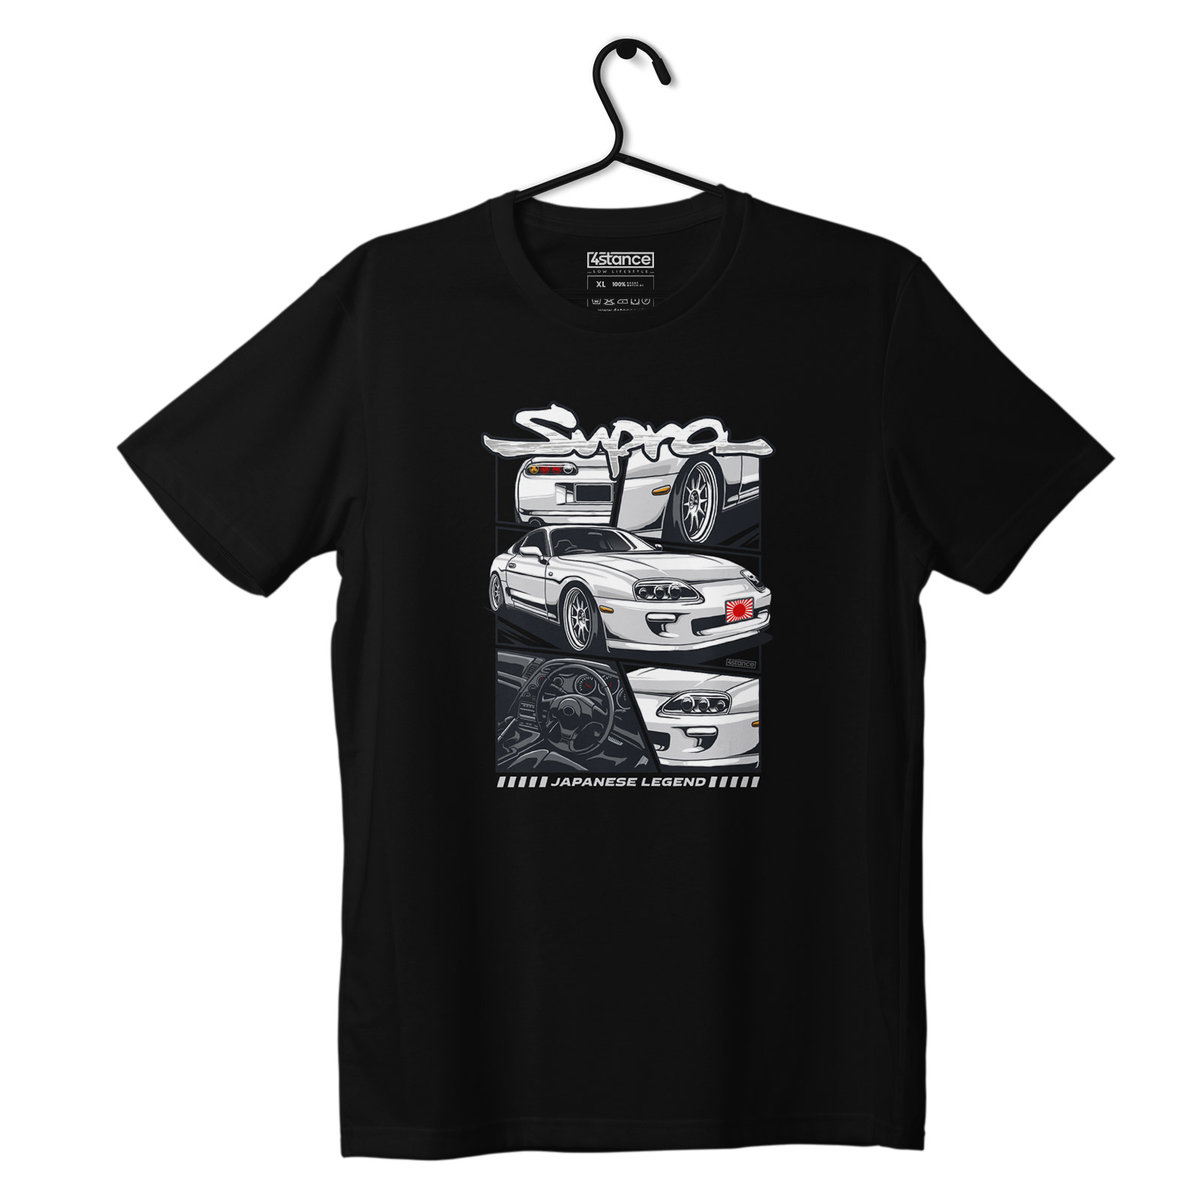 Zdjęcia - Odzież motocyklowa Toyota Czarny T-shirt koszulka  SUPRA MK4 MANGA-XS 